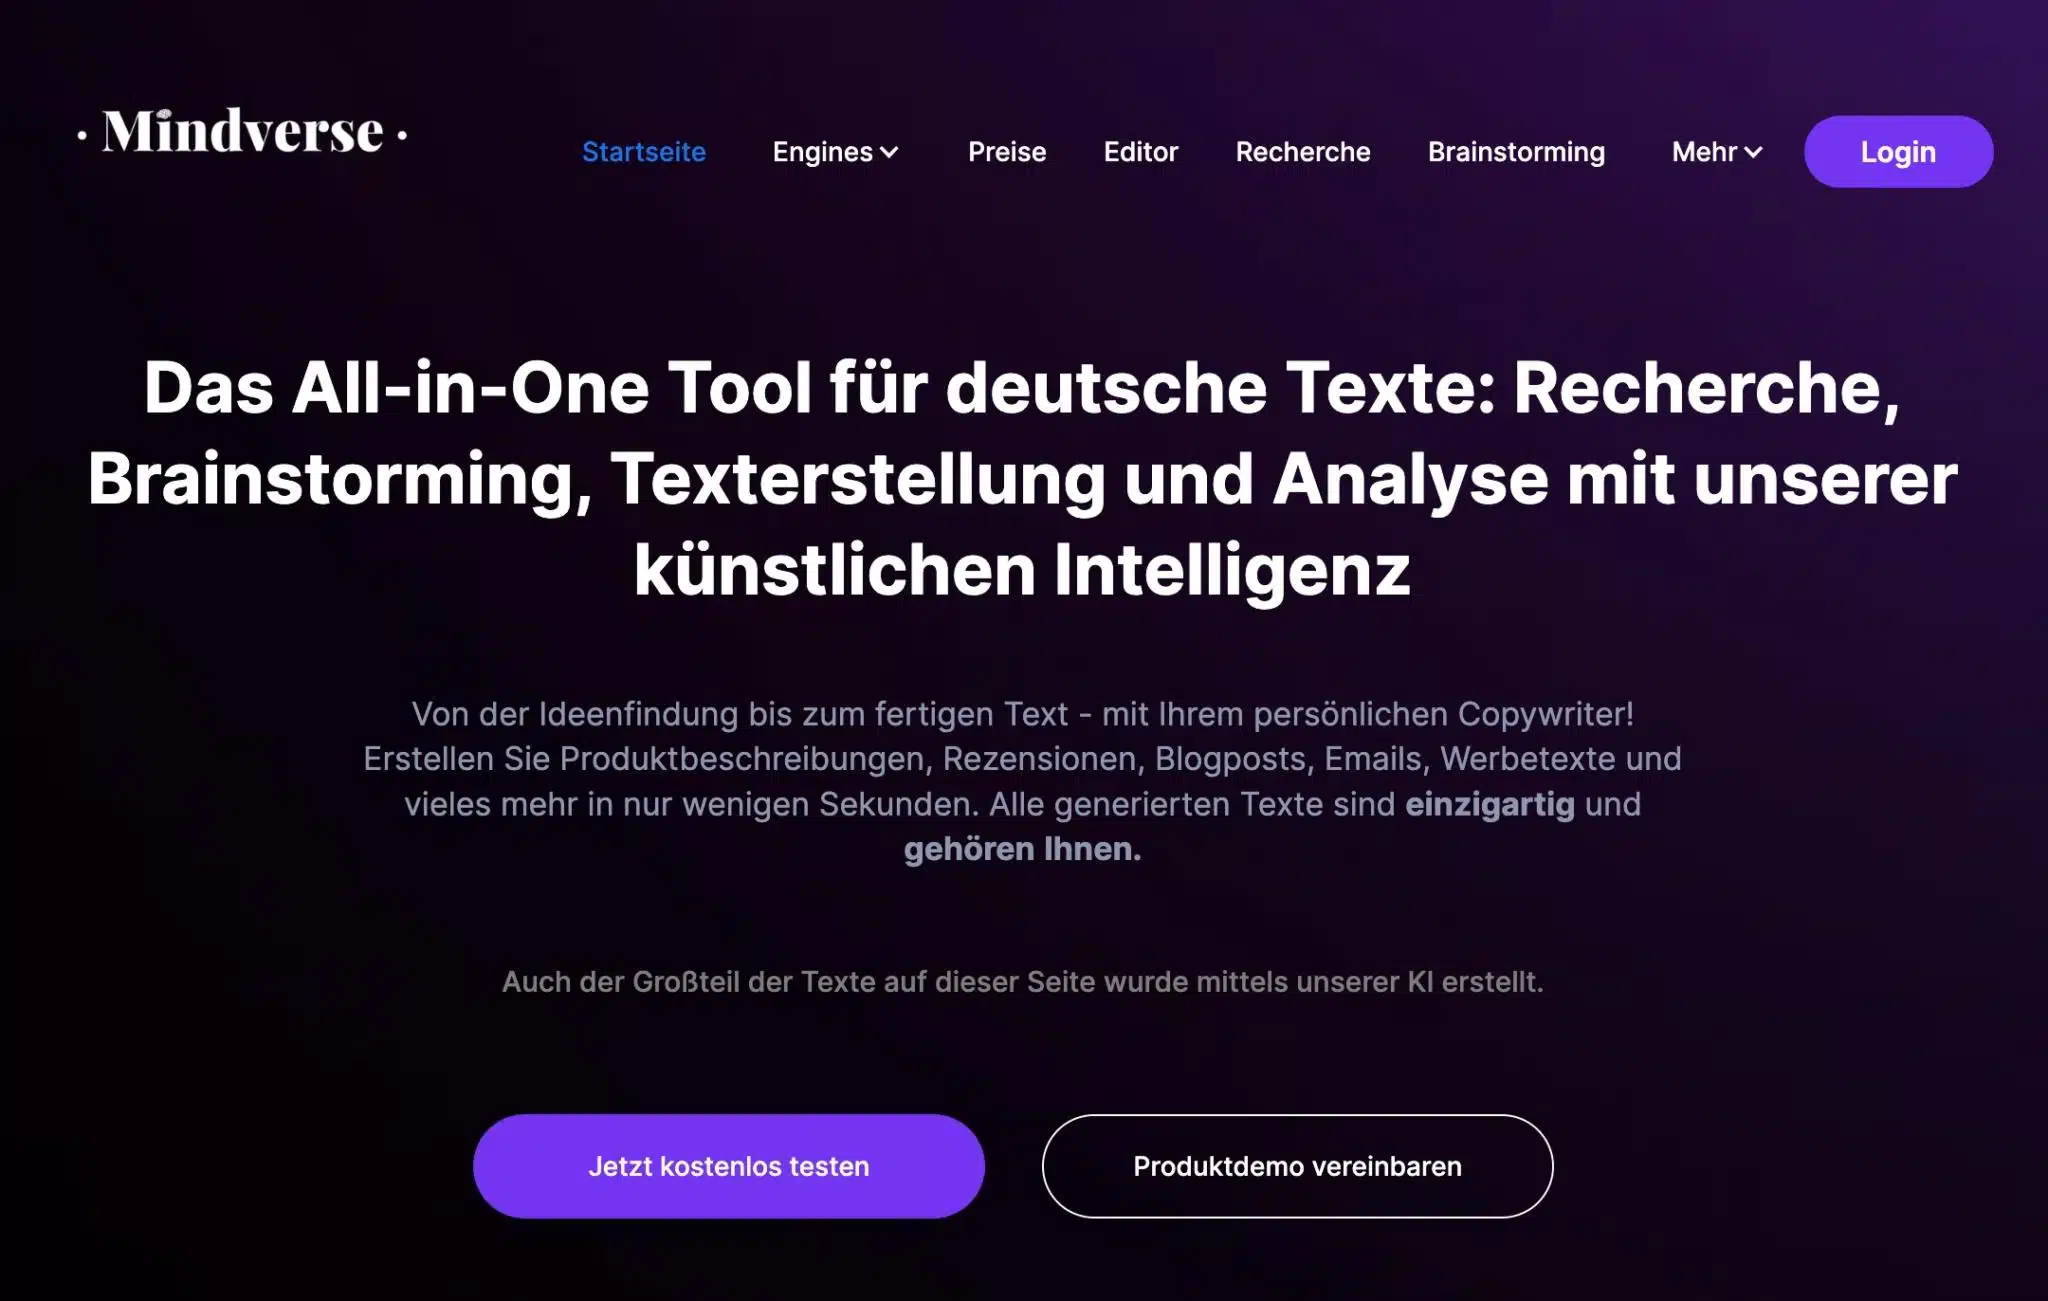 Das All-in-One Tool für deutsche Texte: Recherche, Brainstorming, Texterstellung und Analyse mit unserer künstlichen Intelligenz